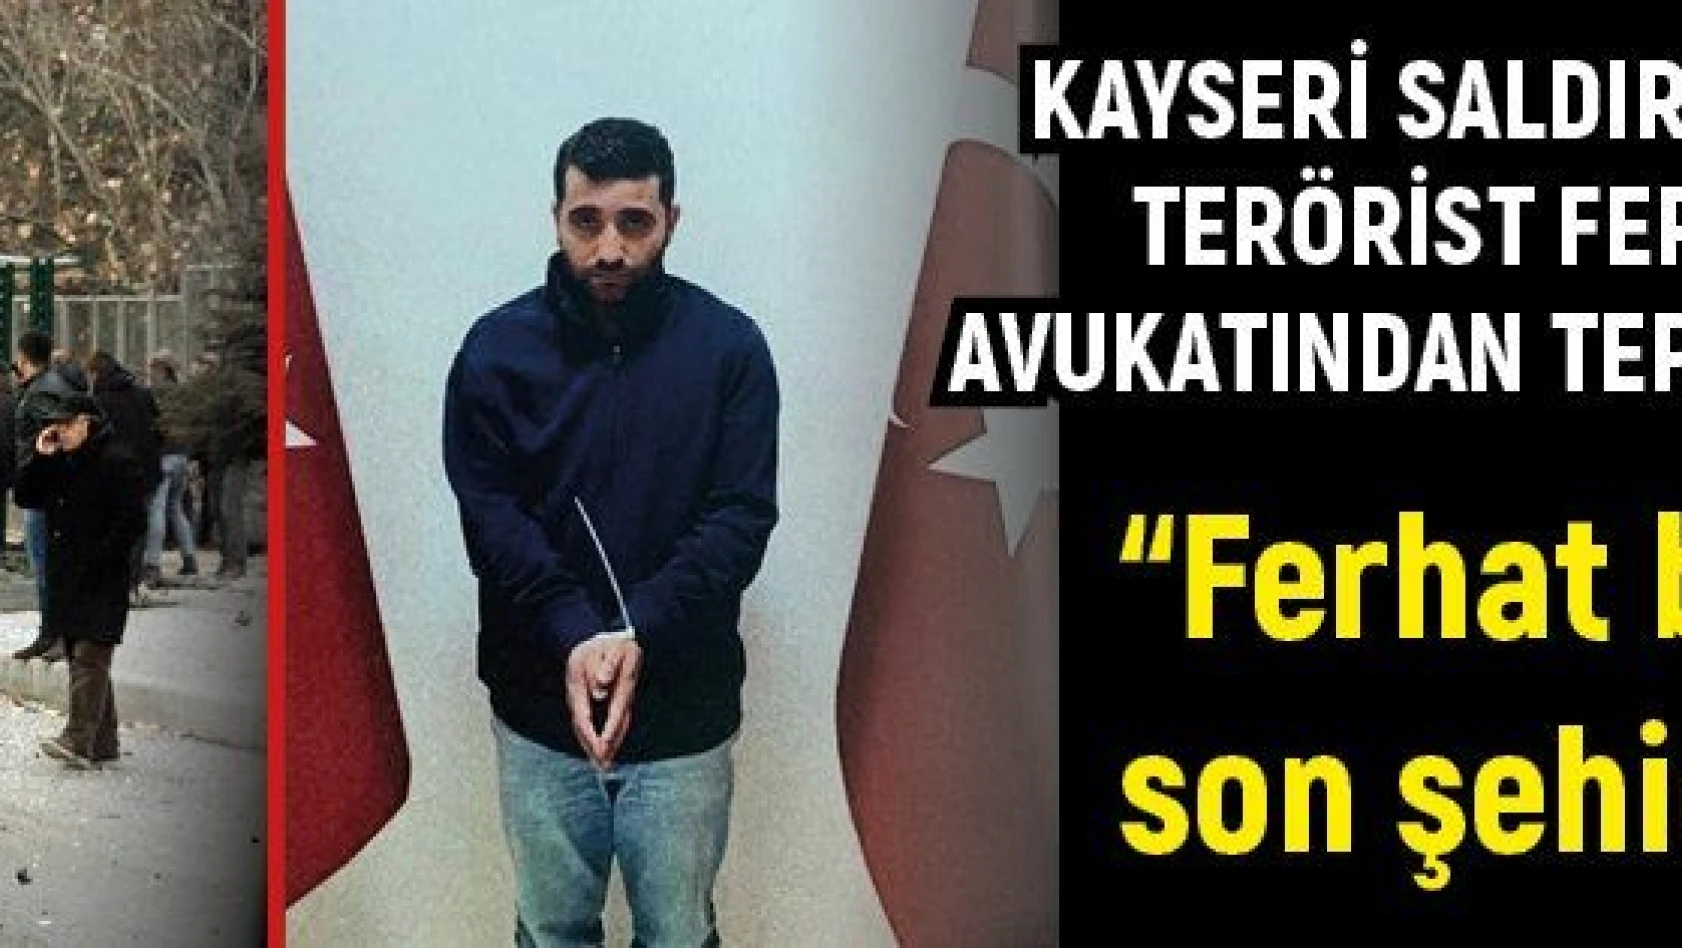 Kayseri saldırısının faili PKK'lı terörist Ferhat Tekiner'in avukatından tepki çeken savunma